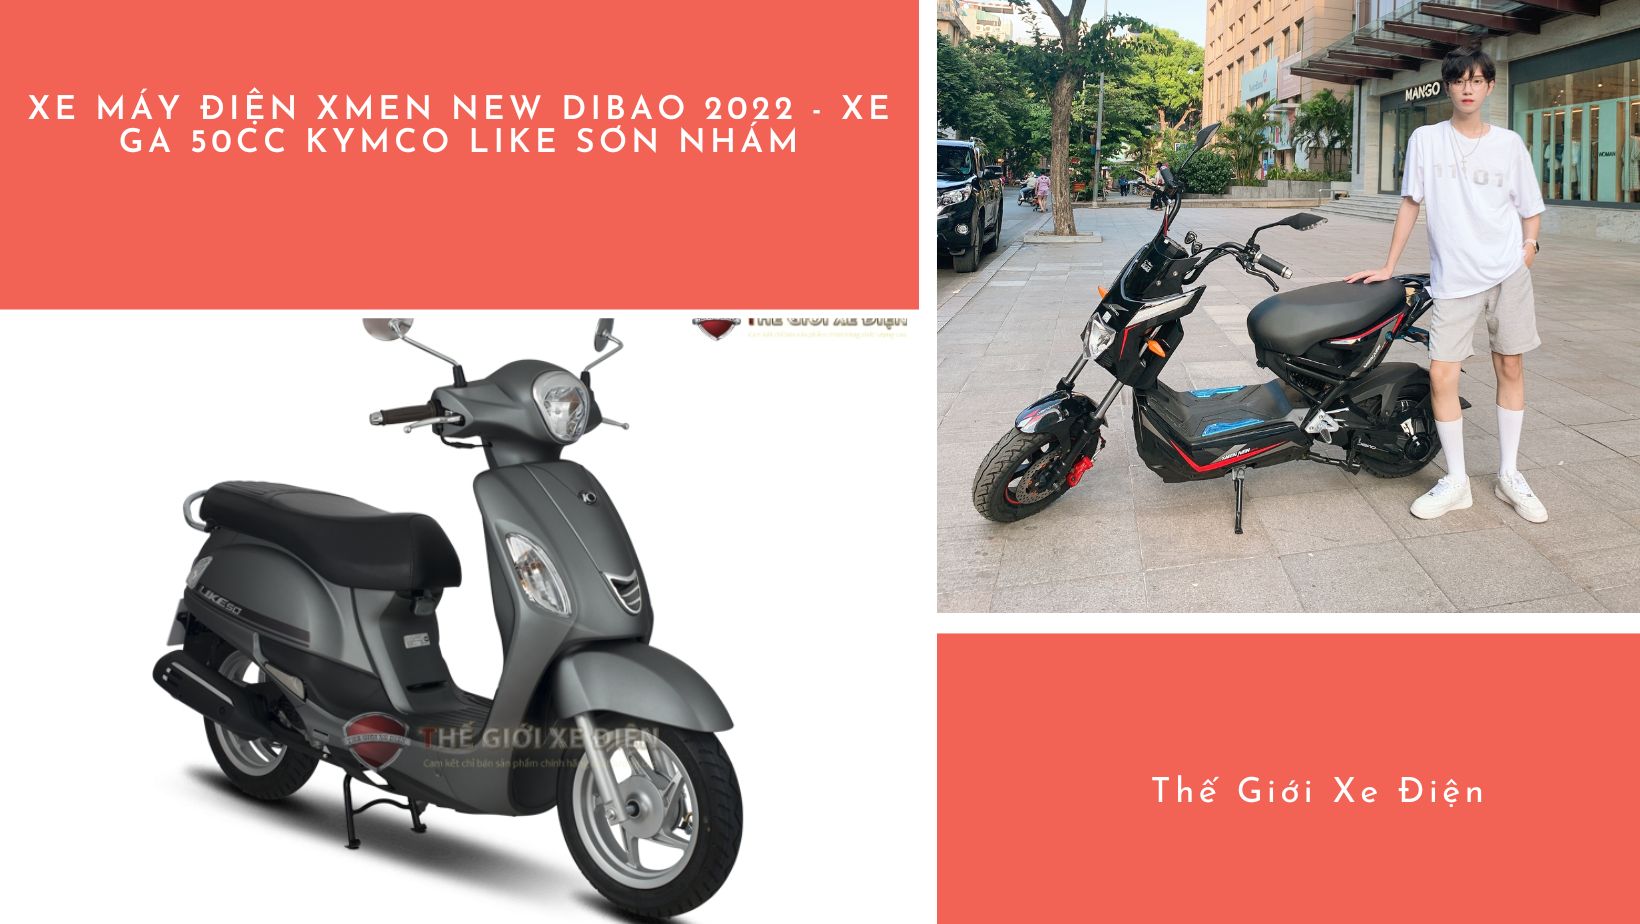 xe máy điện Xmen New Dibao 2022 và xe ga 50cc KYMCO Like sơn nhám 